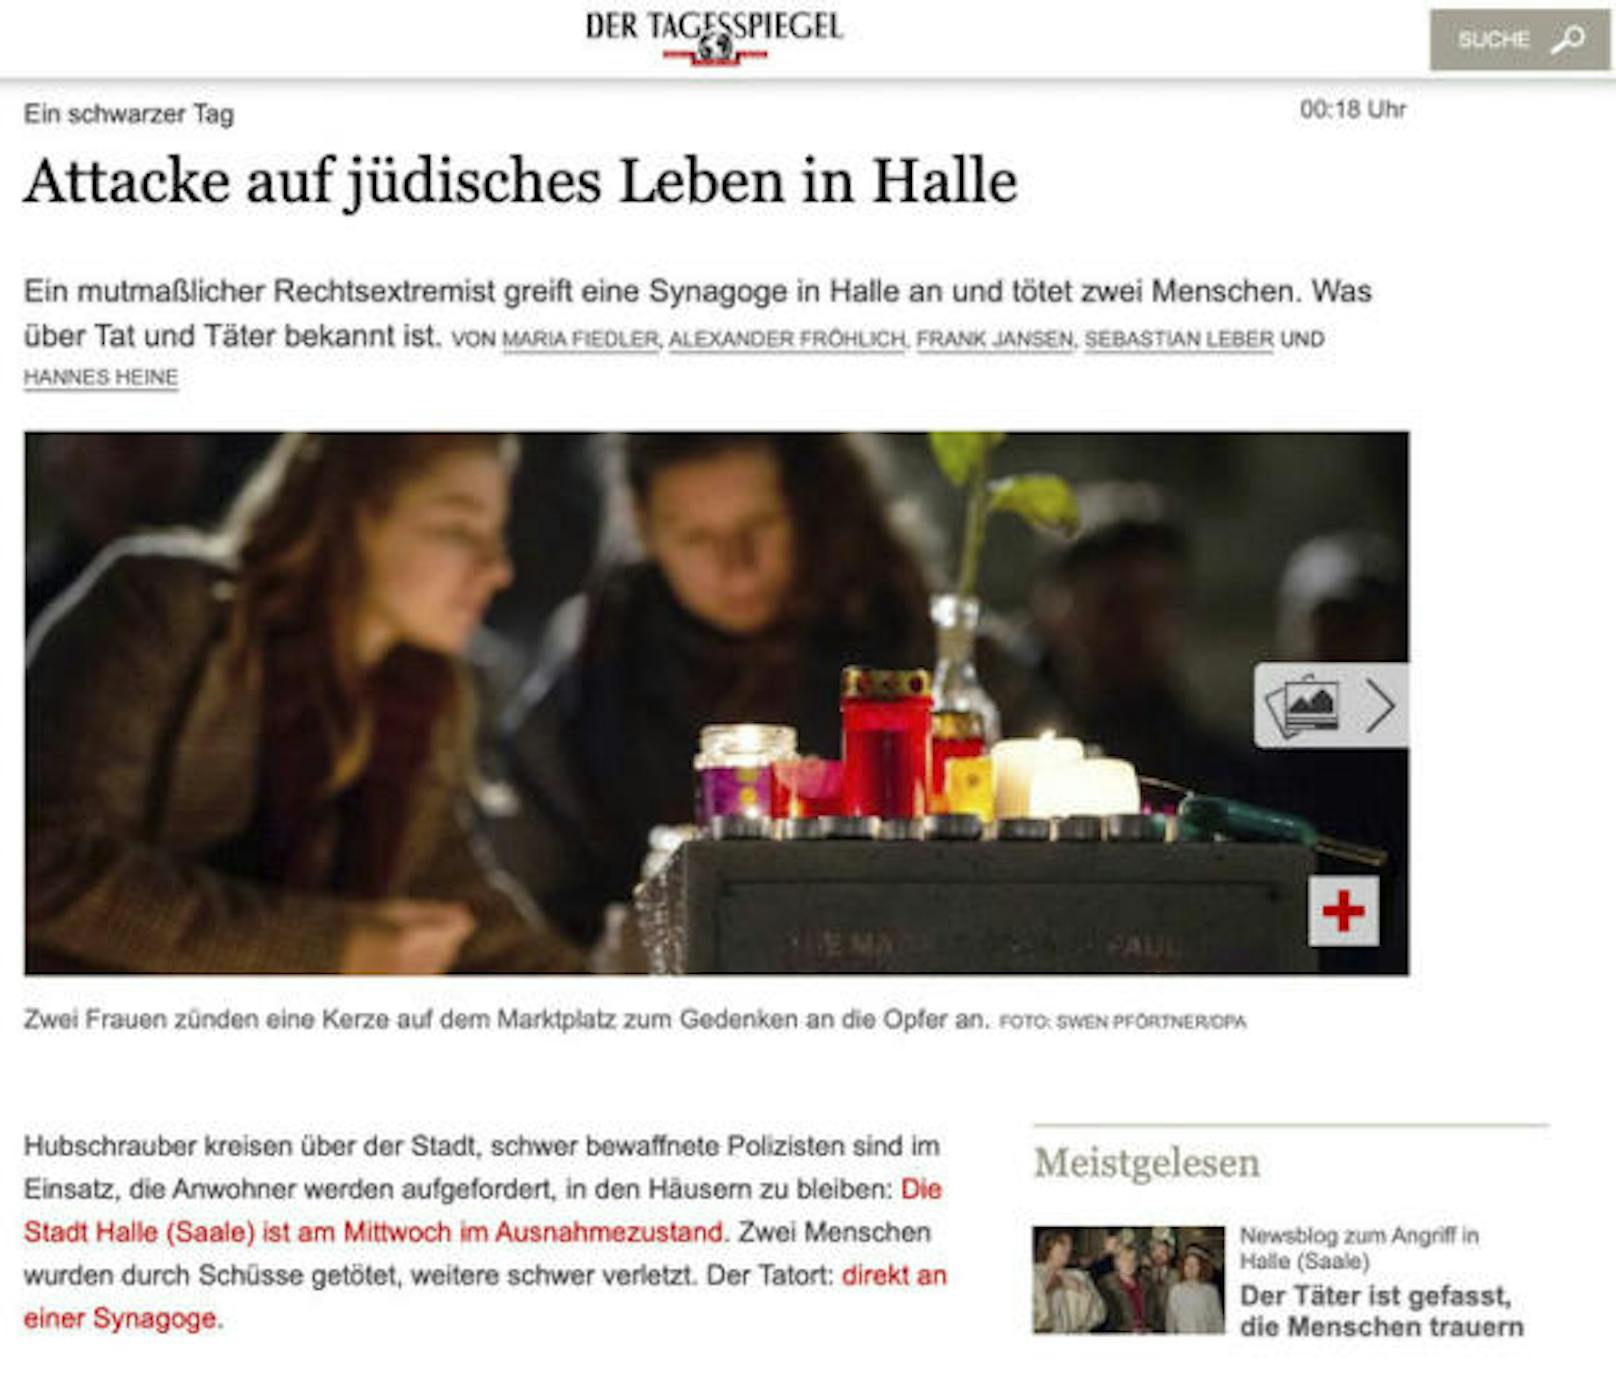 <b>"Attacke auf jüdisches Leben in Halle"</b>
Der "Tagesspiegel" schreibt von einem schwarzen Tag für die jüdische Gemeinschaft, aber auch für Deutschland.